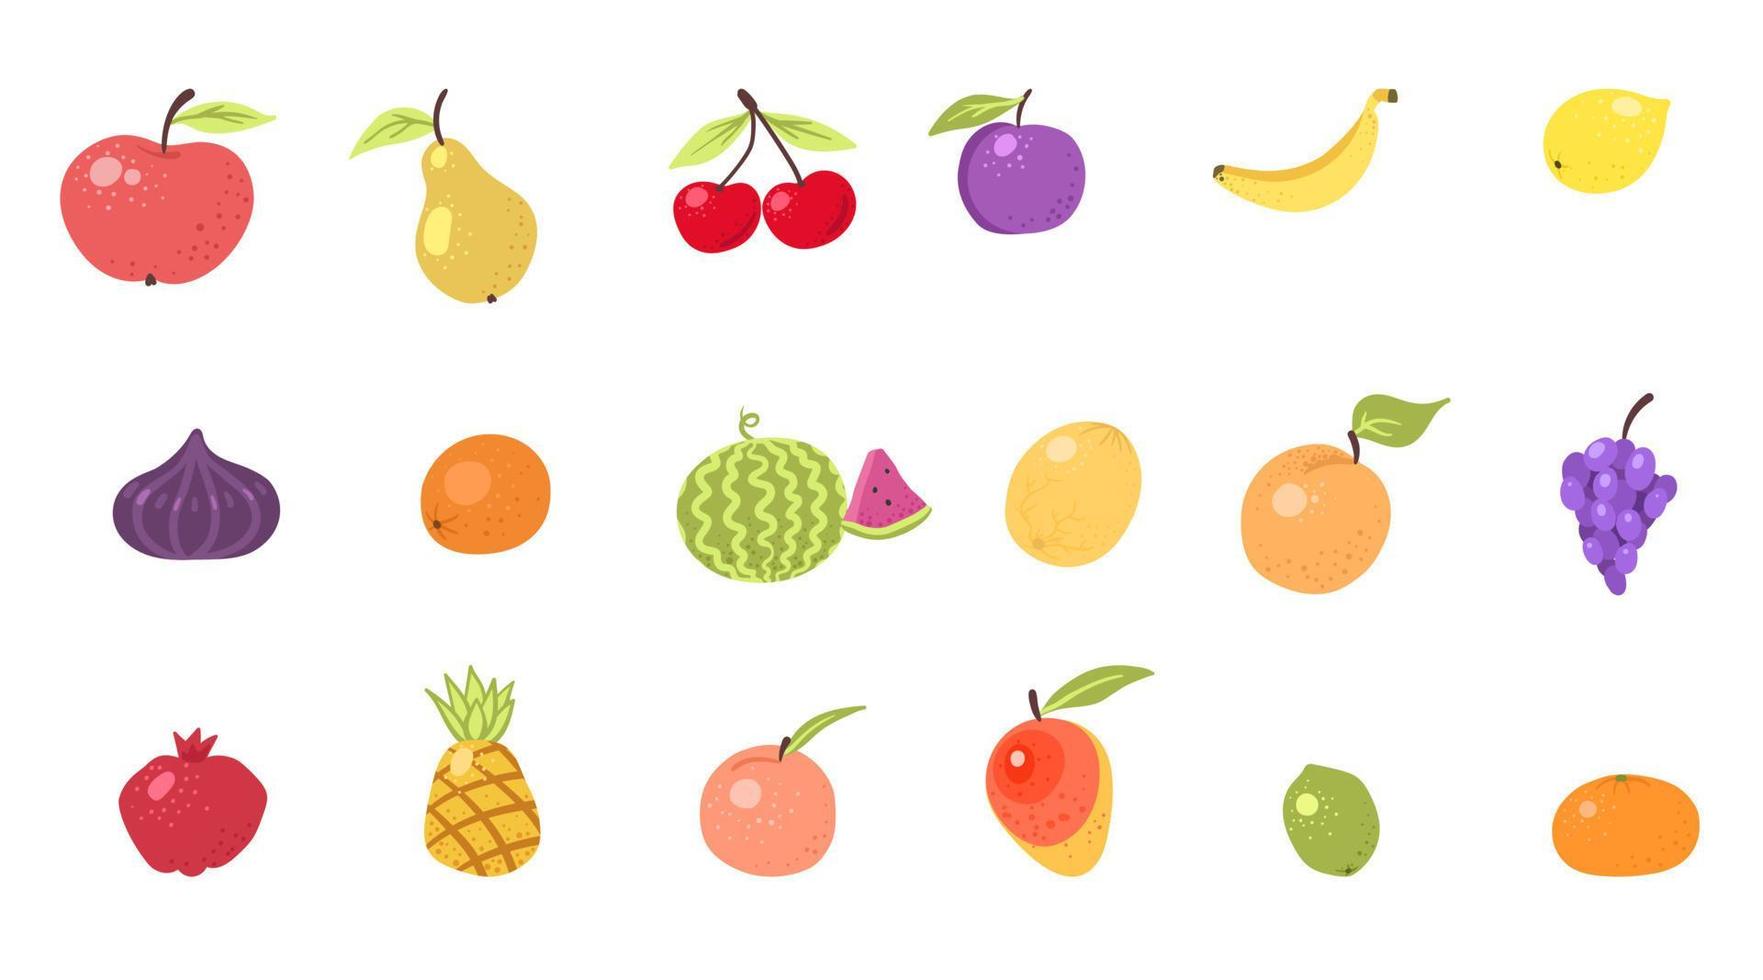 frutta e bacche carino disegnato doodle icone vector set. illustrazione di frutti colorati e monocromatici per la progettazione di prodotti agricoli. cucina, cibo vegetariano. limone, banana, arancia, mandarino, pera, mela.